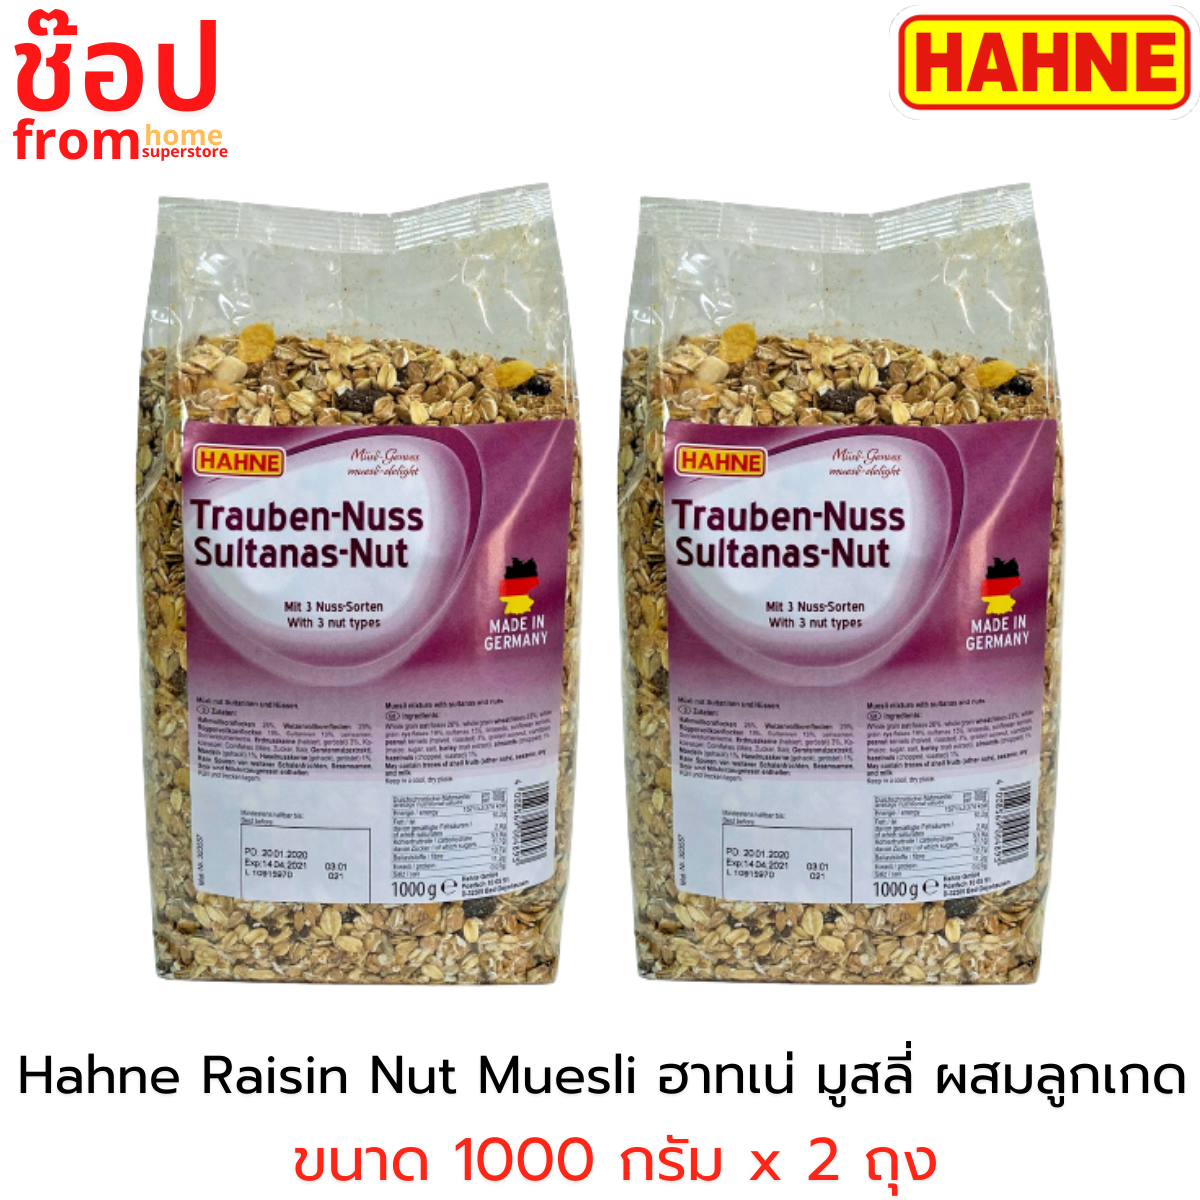 [2 แพค] Hahne Raisin Nut Muesli ฮาทเน่ เรซิน นัต มูสลี่ ผสมลูกเกด ขนาด 1000 กรัม x 2 ถุง อาหารเช้าเพื่อสุขภาพ ข้าวโอ๊ตธัญพืช ฮาทเน่มูสลี่